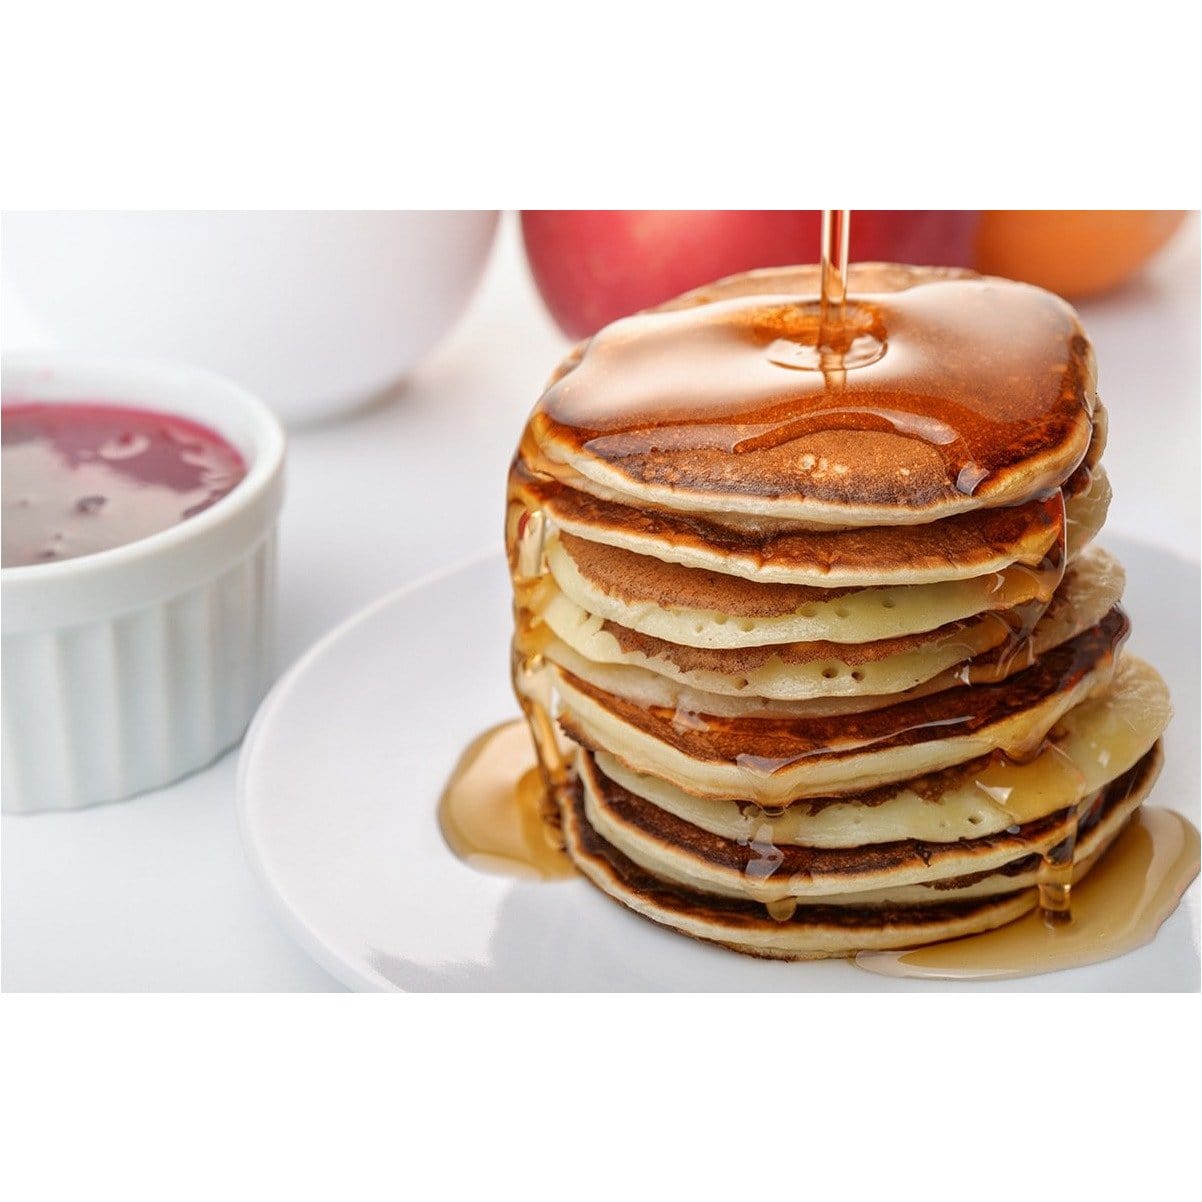 Une assiette blanche avec des pancakes, du sirop brun et un petit bol blanc avec une confiture rouge. Le tout sur une table blanche